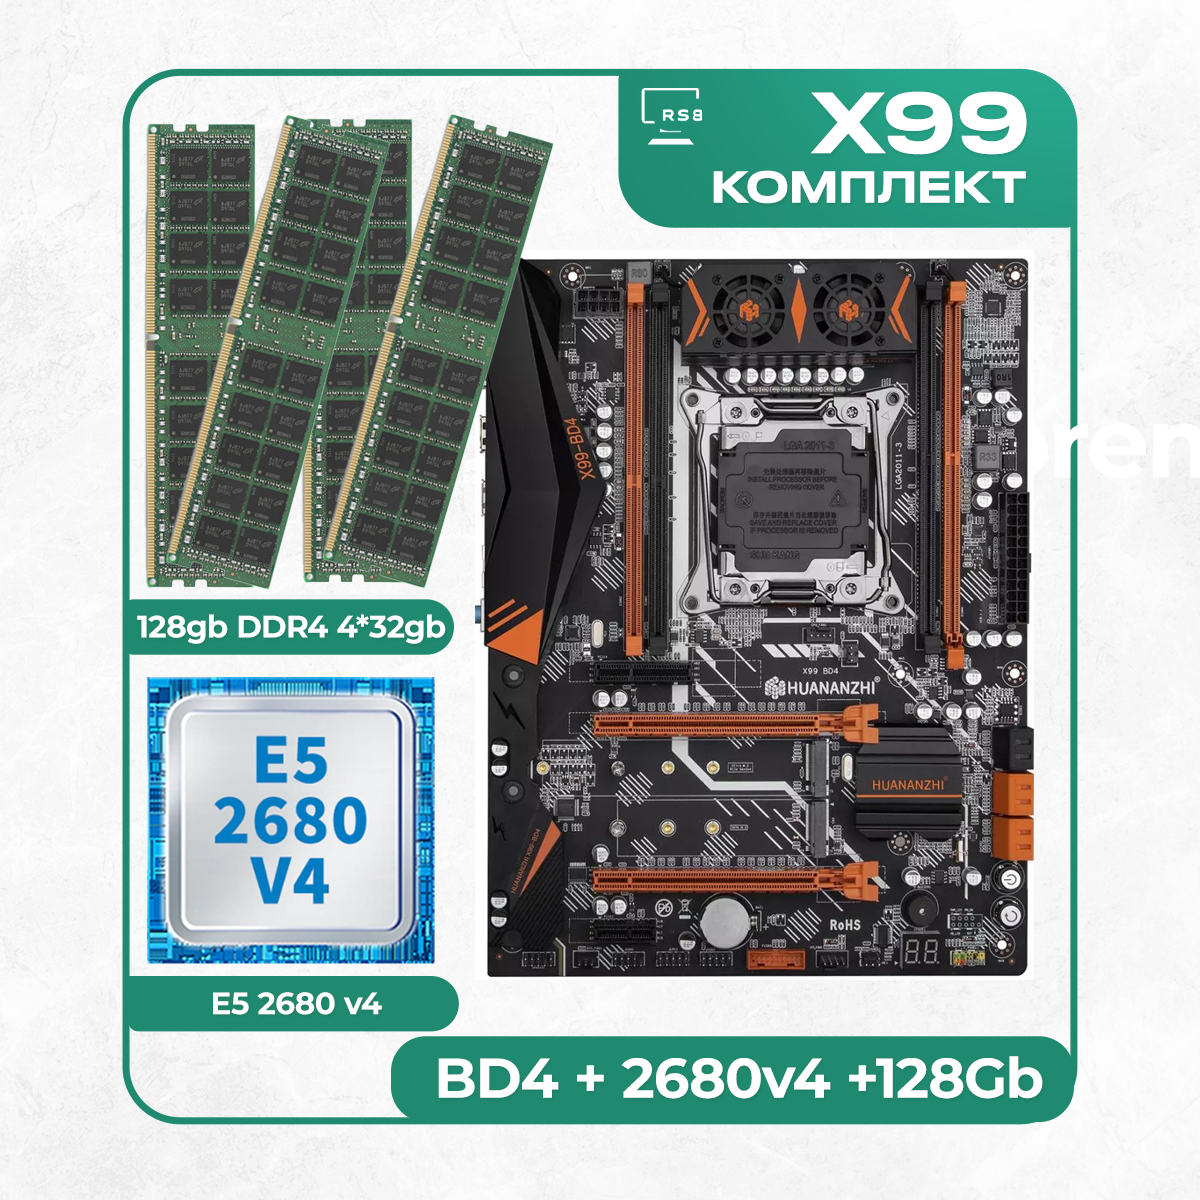 Комплект материнской платы X99: Huananzhi BD4 + Xeon E5 2680v4 + DDR4 128Гб 4х32Гб